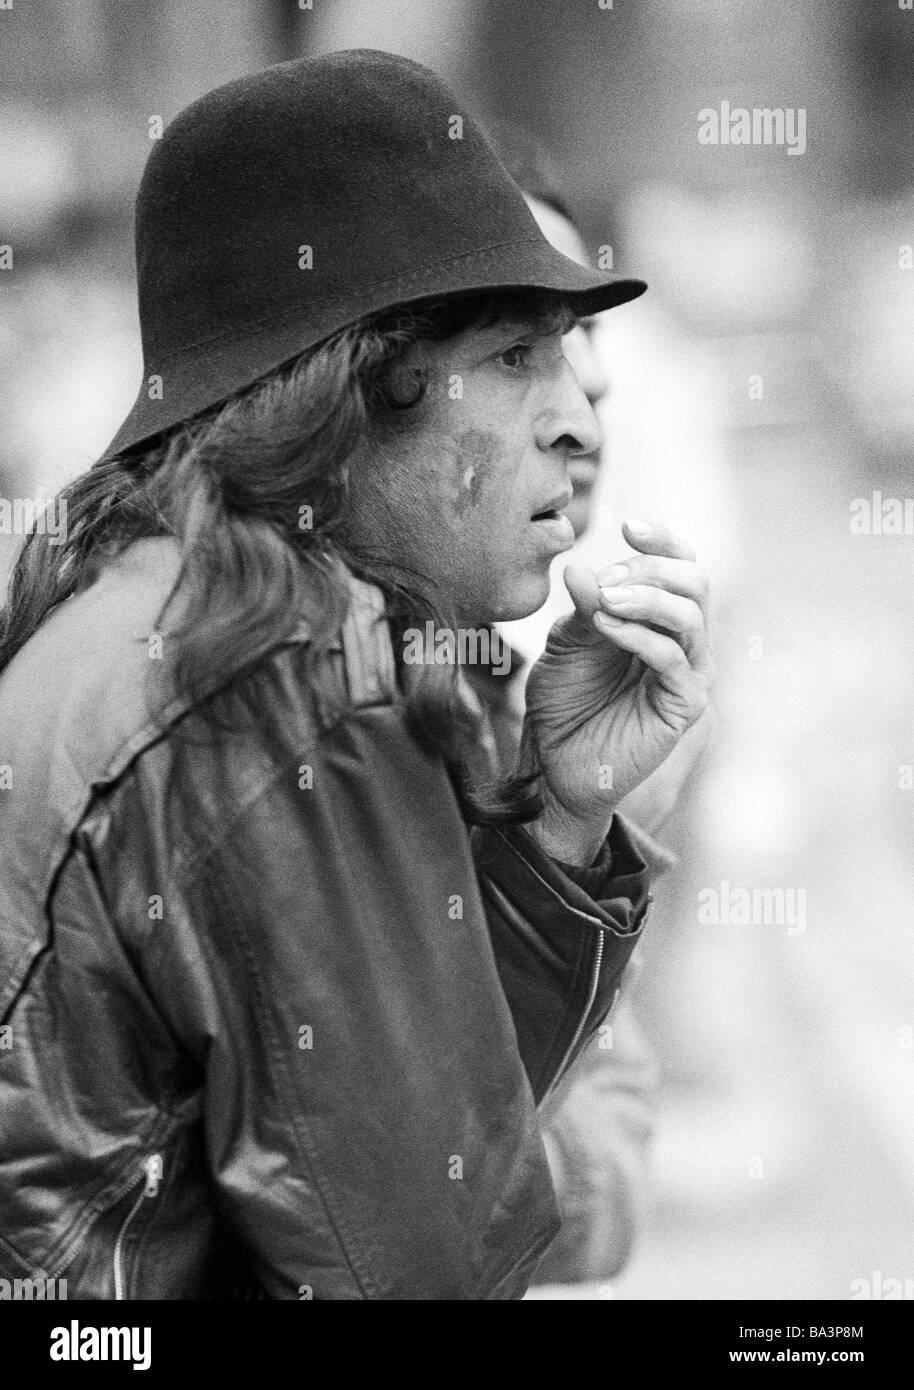 Negli anni settanta, foto in bianco e nero, persone, l'uomo con il cappello, indio, ritratto, di età compresa tra i 25 ed i 35 anni, Gran Bretagna, Inghilterra, Londra Foto Stock